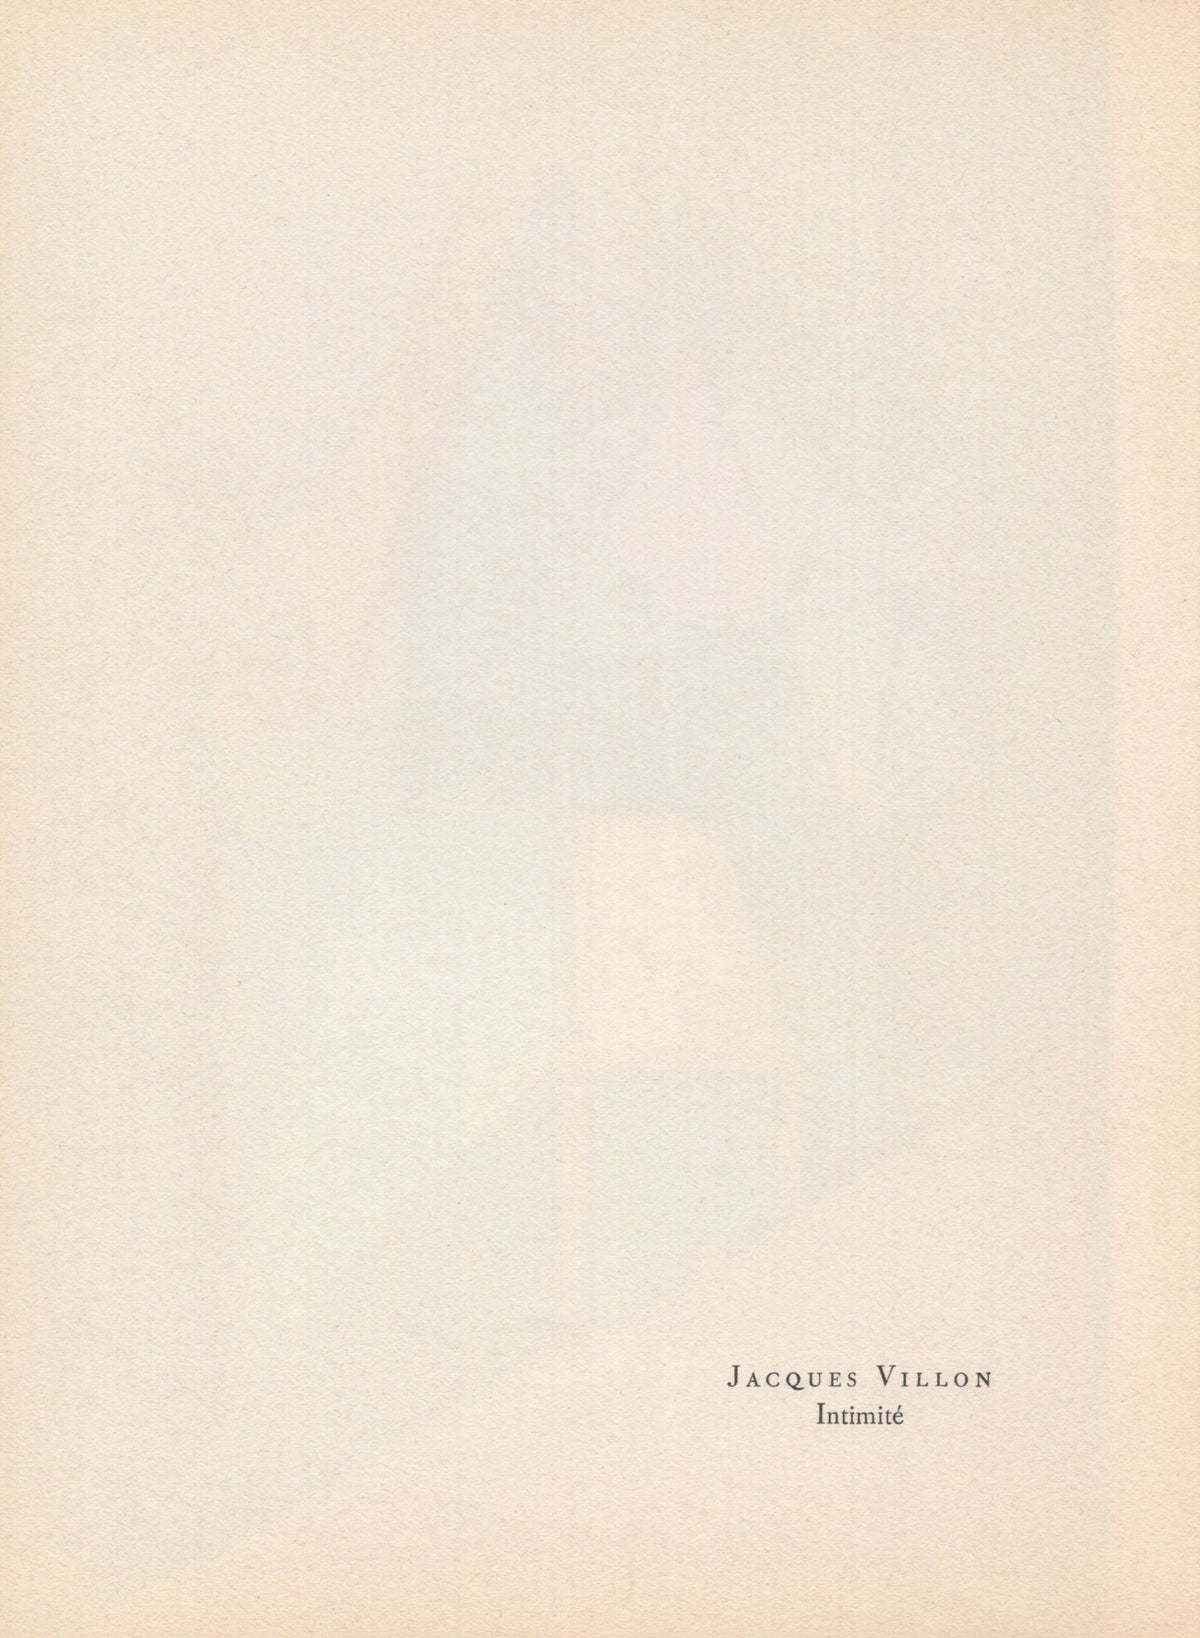 Jacques Villon - &quot;Intimite&quot; - Mourlot Press 1964 Lithograph - 7.5 x 10&quot;